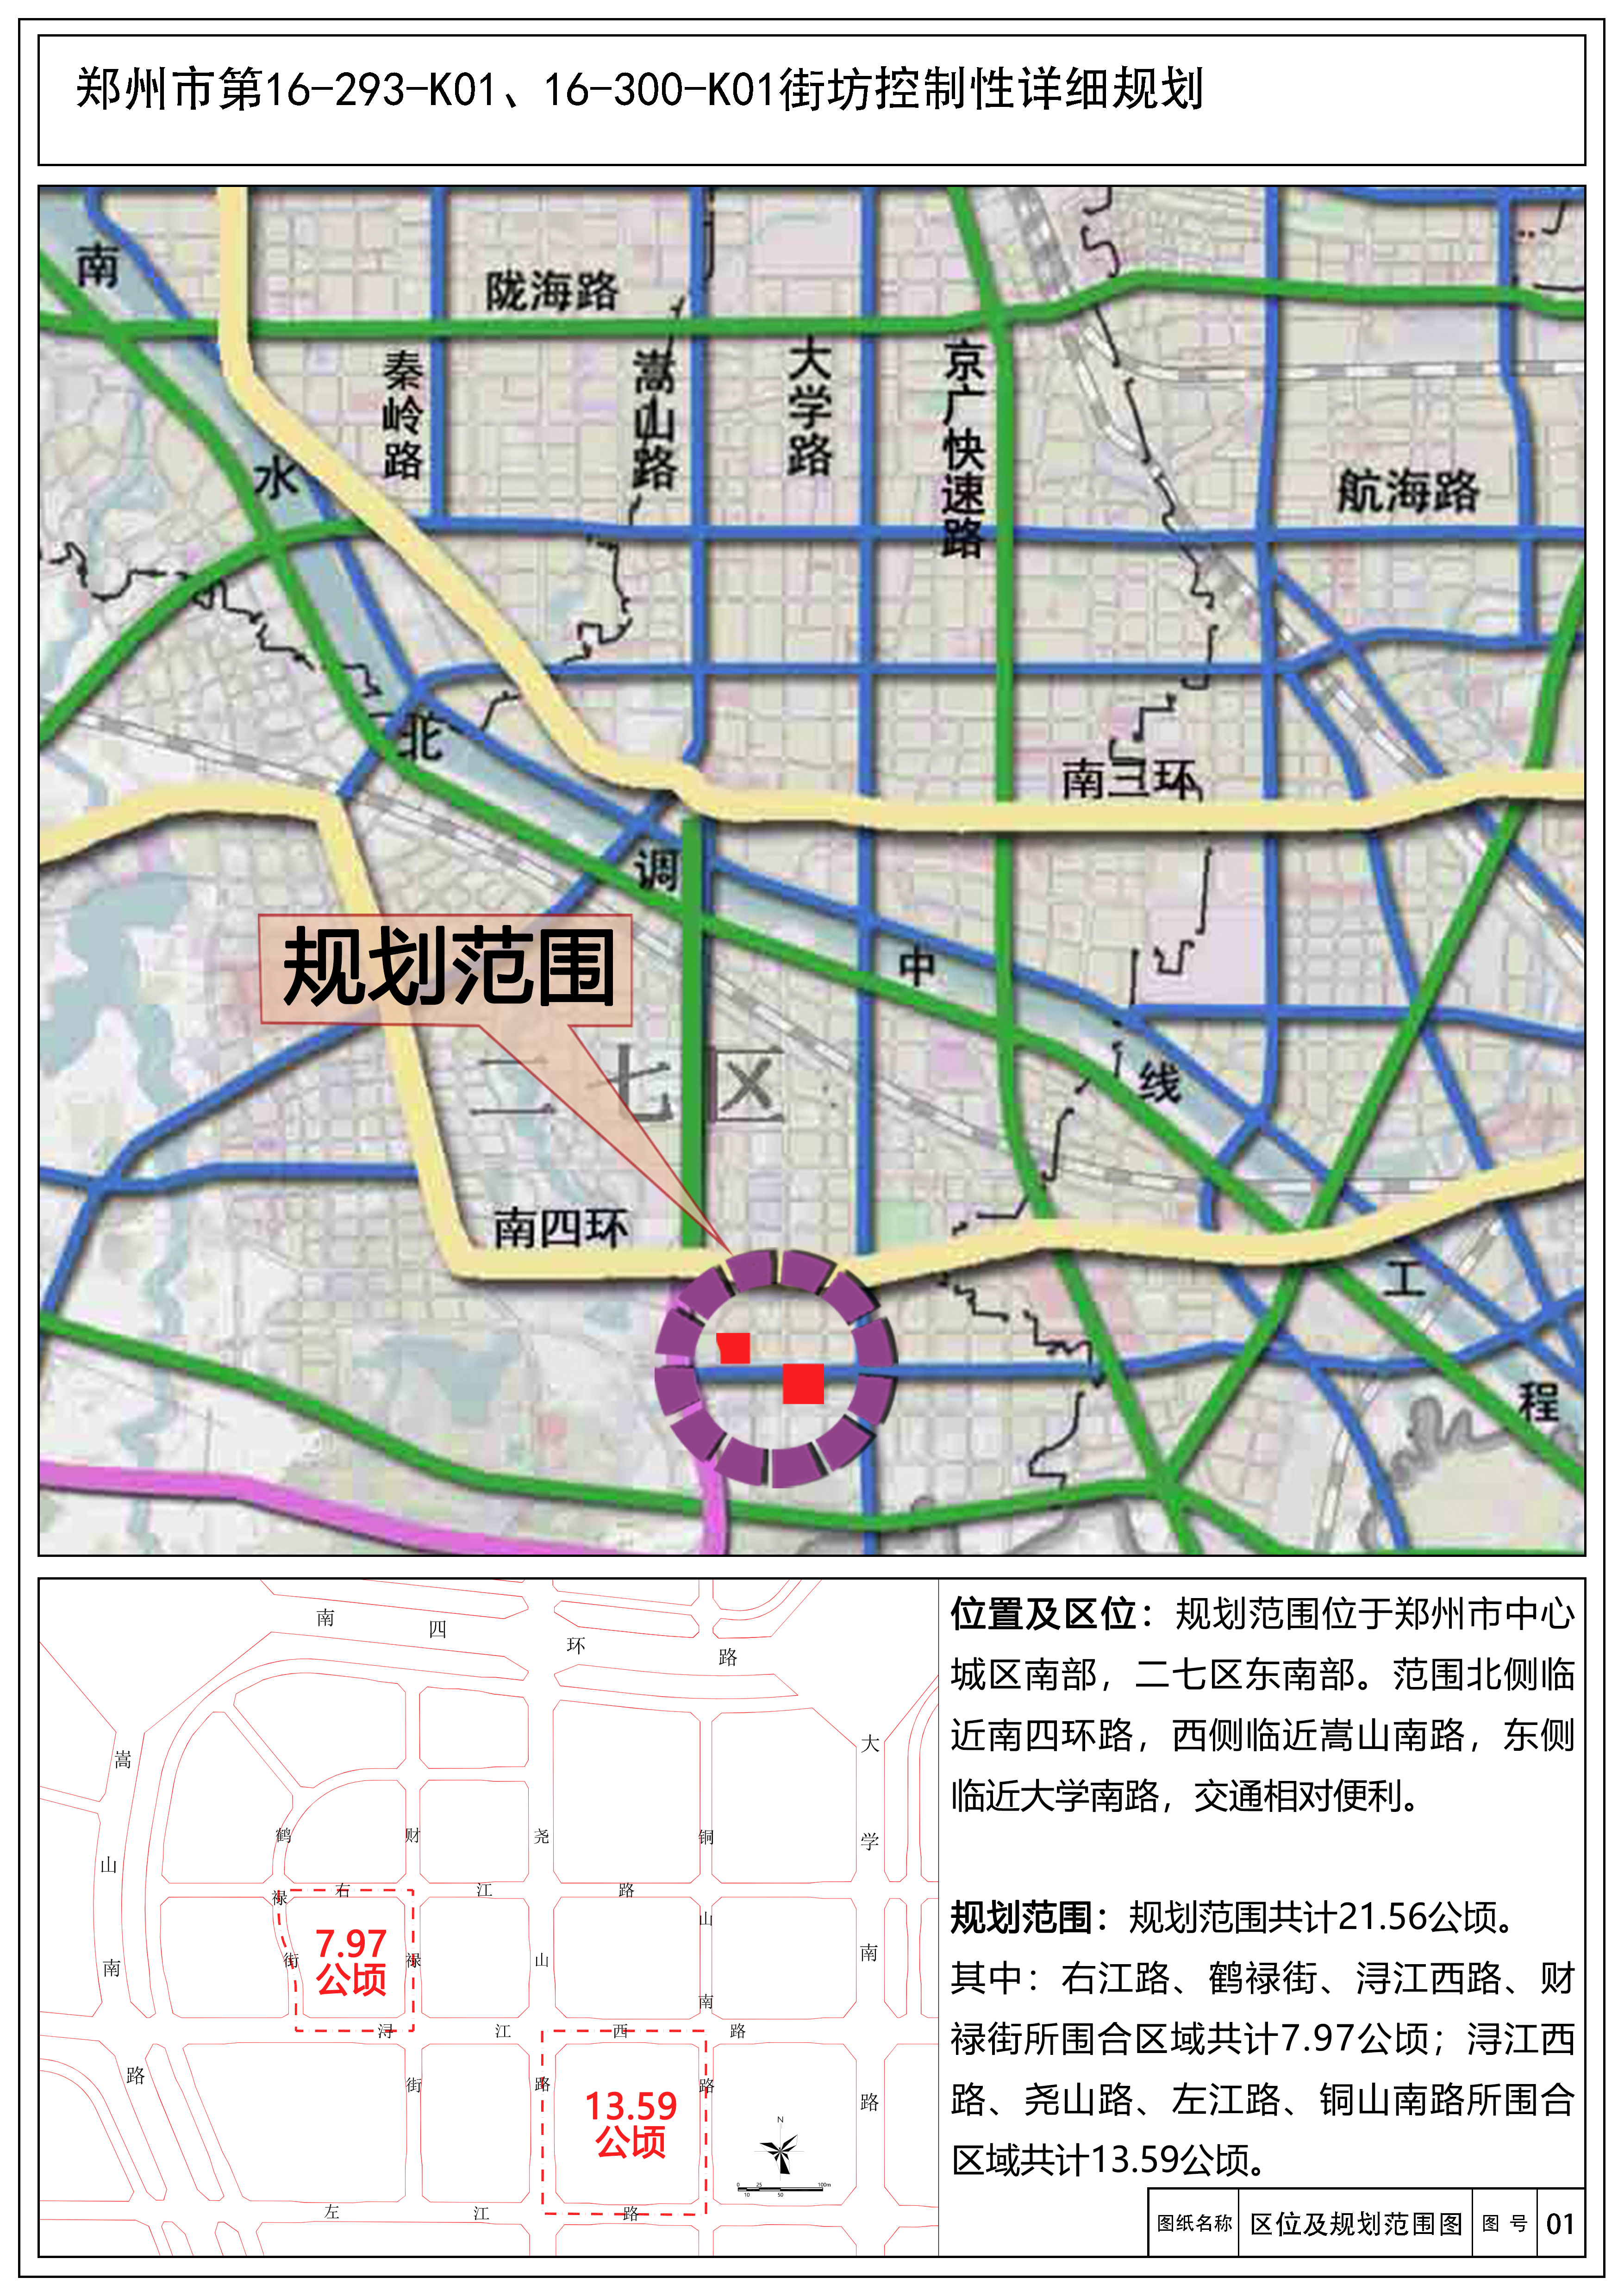 郑州市第16-293-K01、16-300-K01街坊控制性详细规划